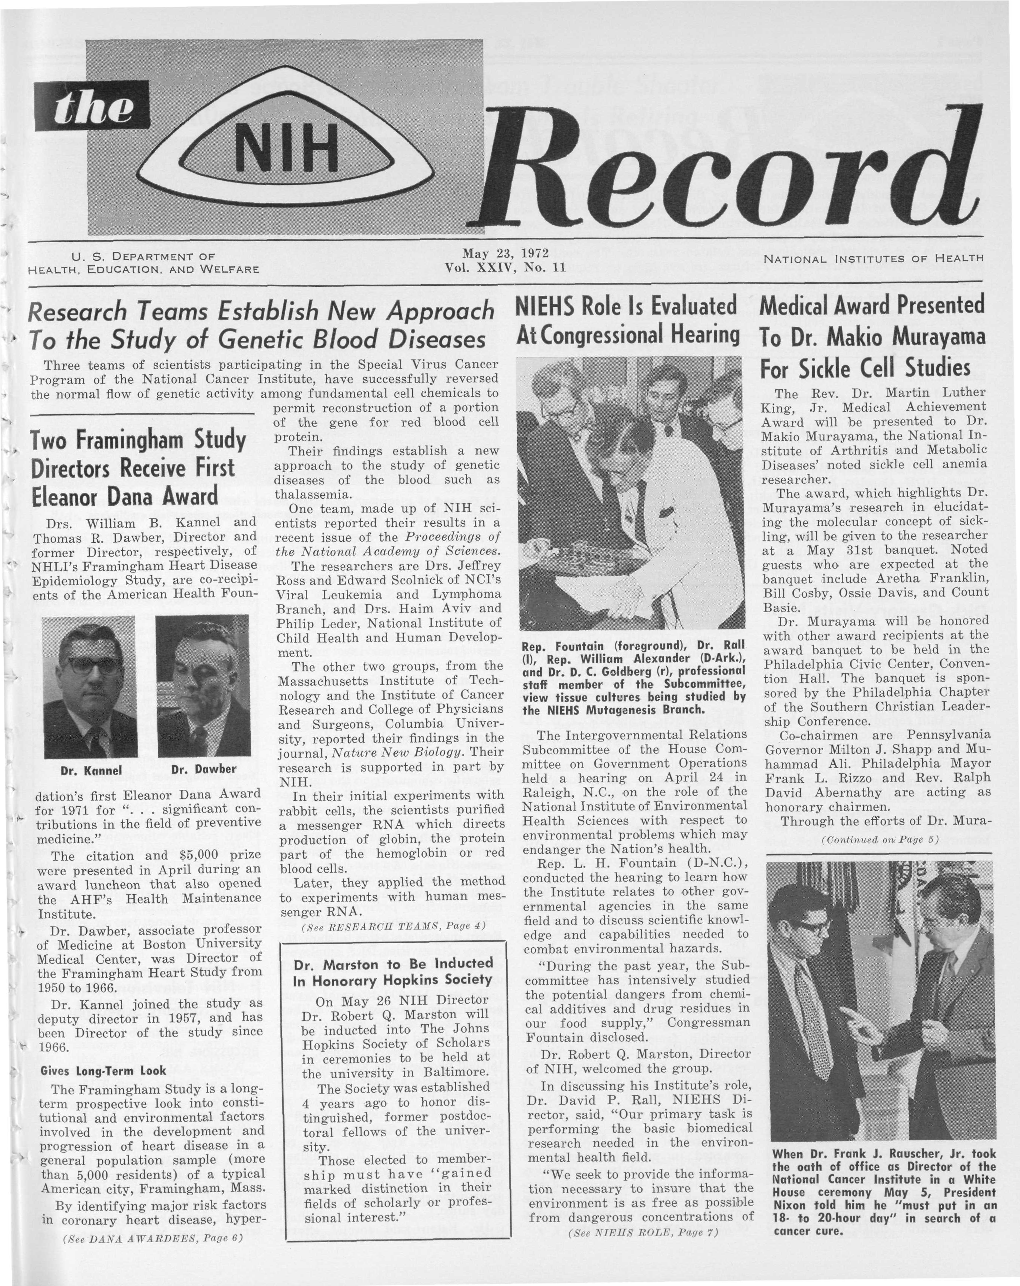 May 23, 1972, NIH Record, Vol. XXIV, No. 11